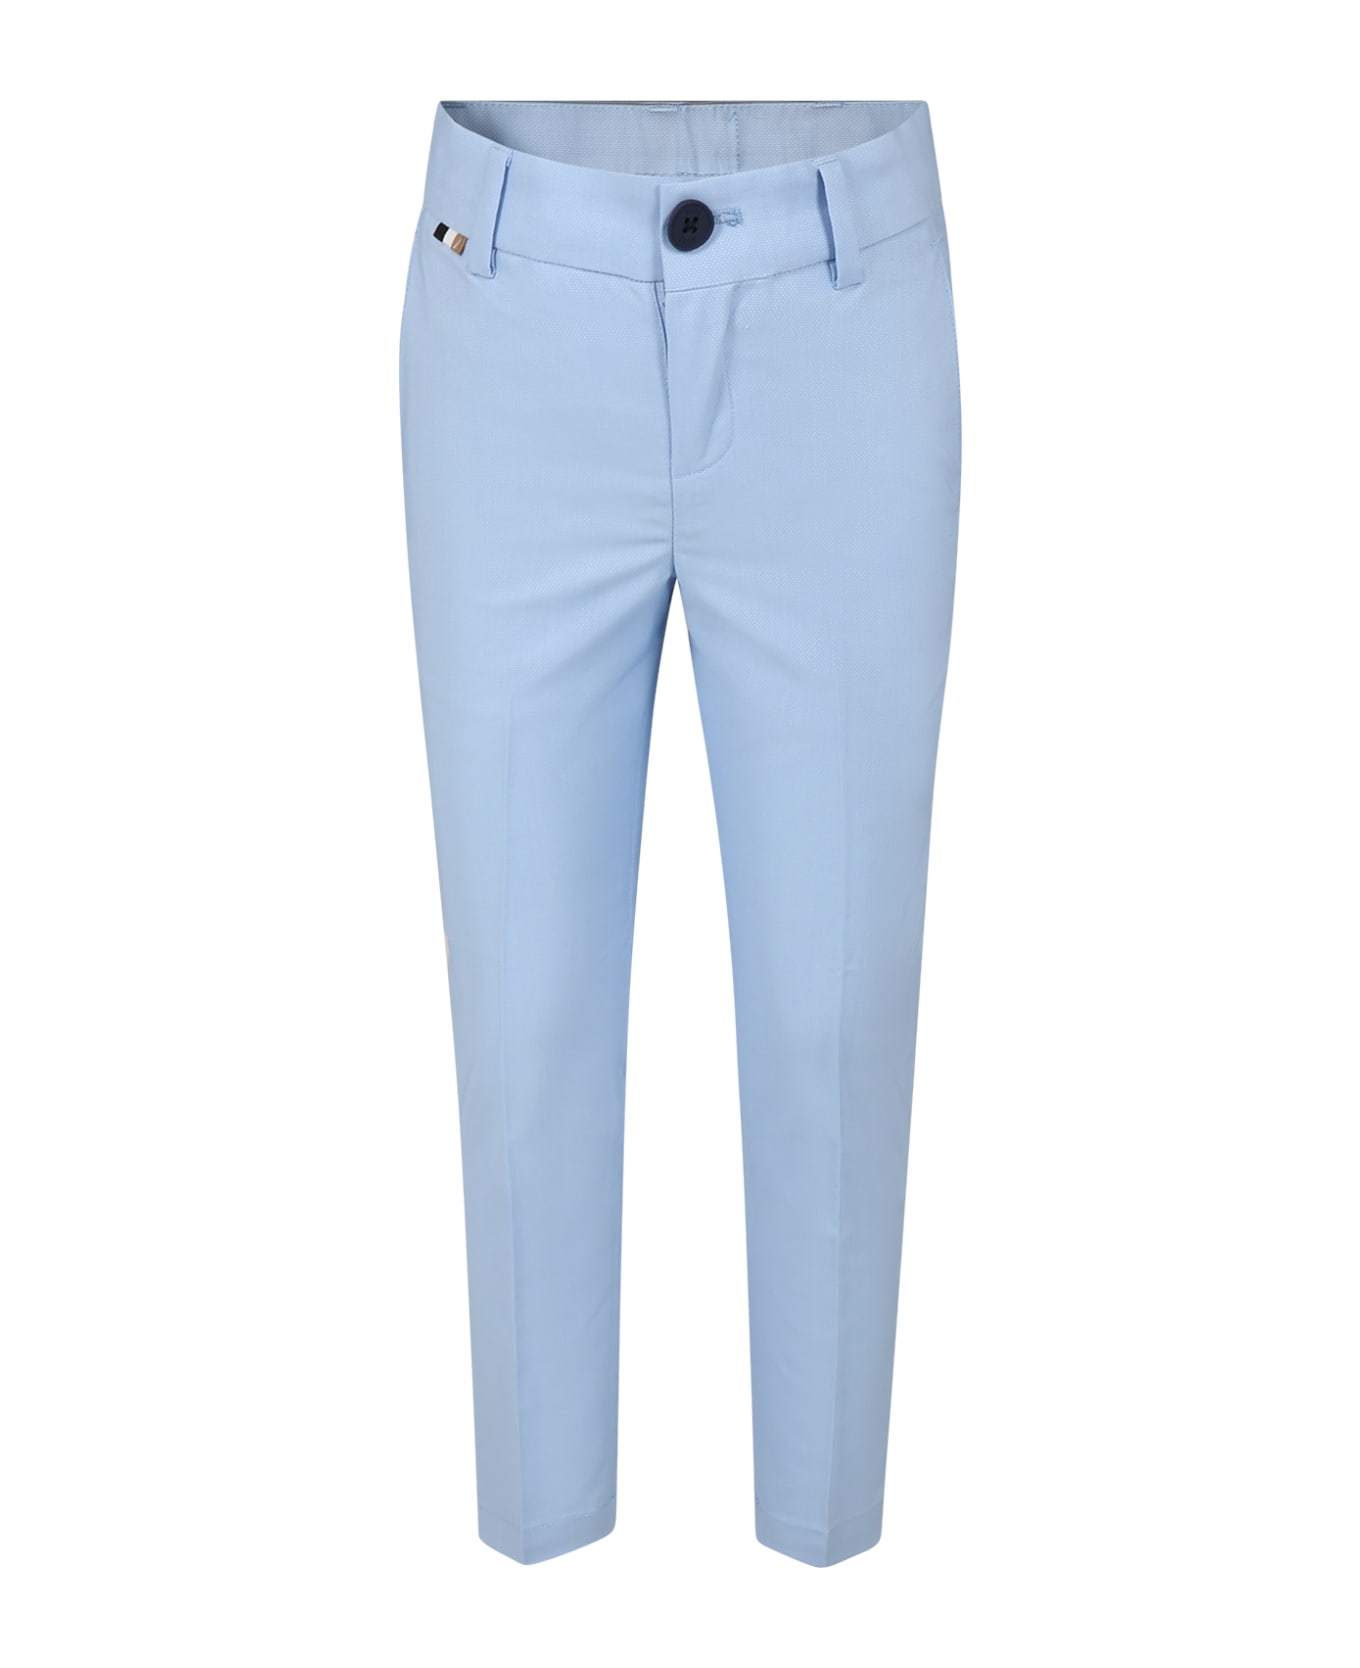 Hugo Boss Elegant Sky Blue Trousers For Boy - Light Blue ボトムス